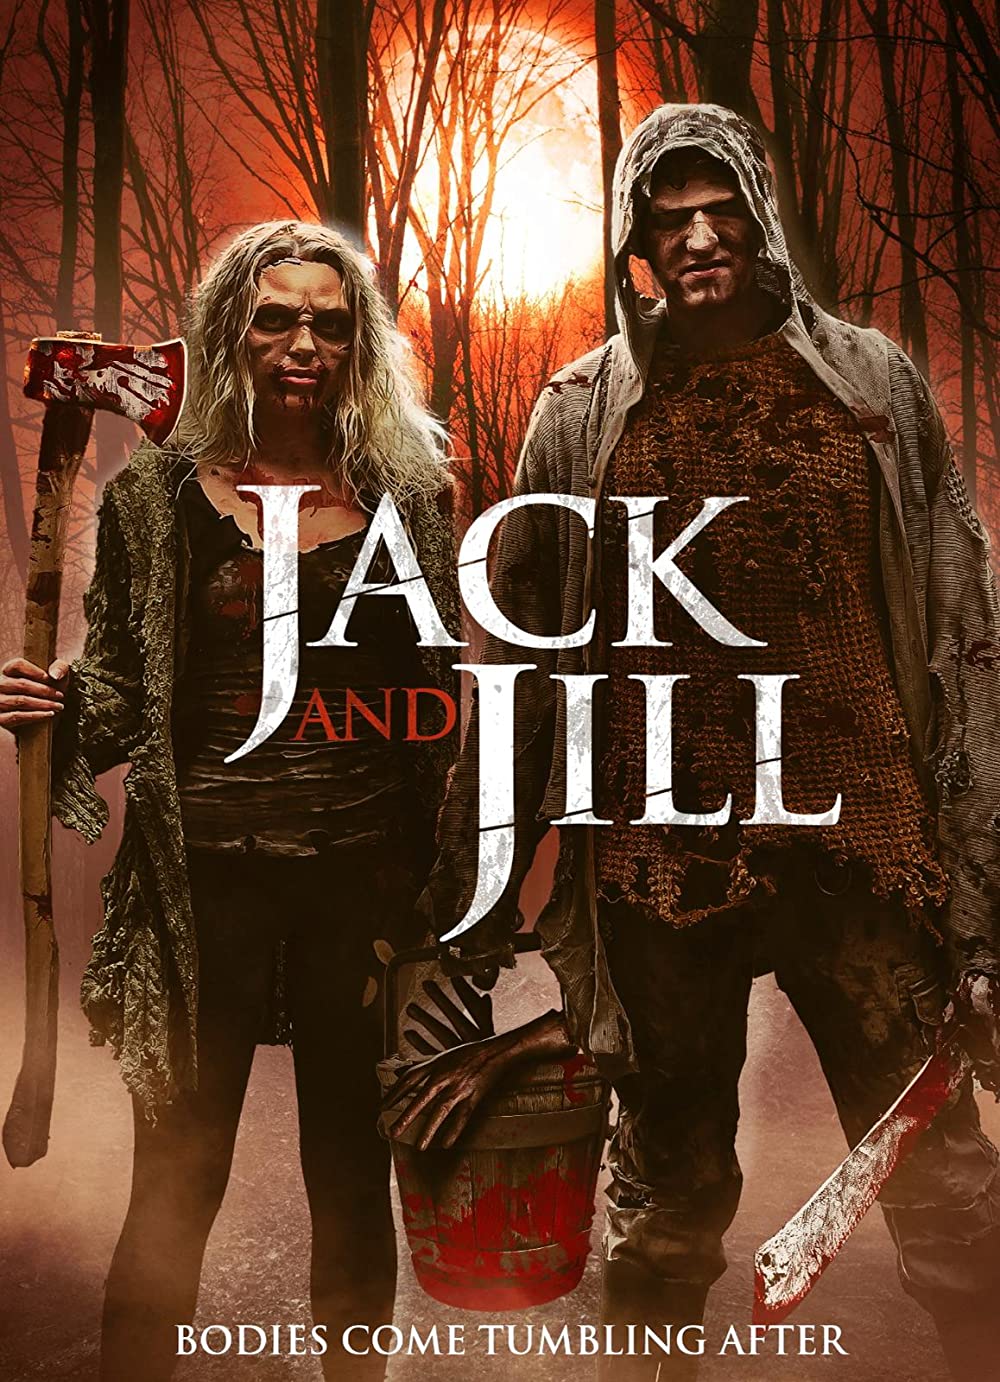 ดูหนังออนไลน์ฟรี The Legend of Jack and Jill (2021) ตำนานของแจ็คและจิลล์